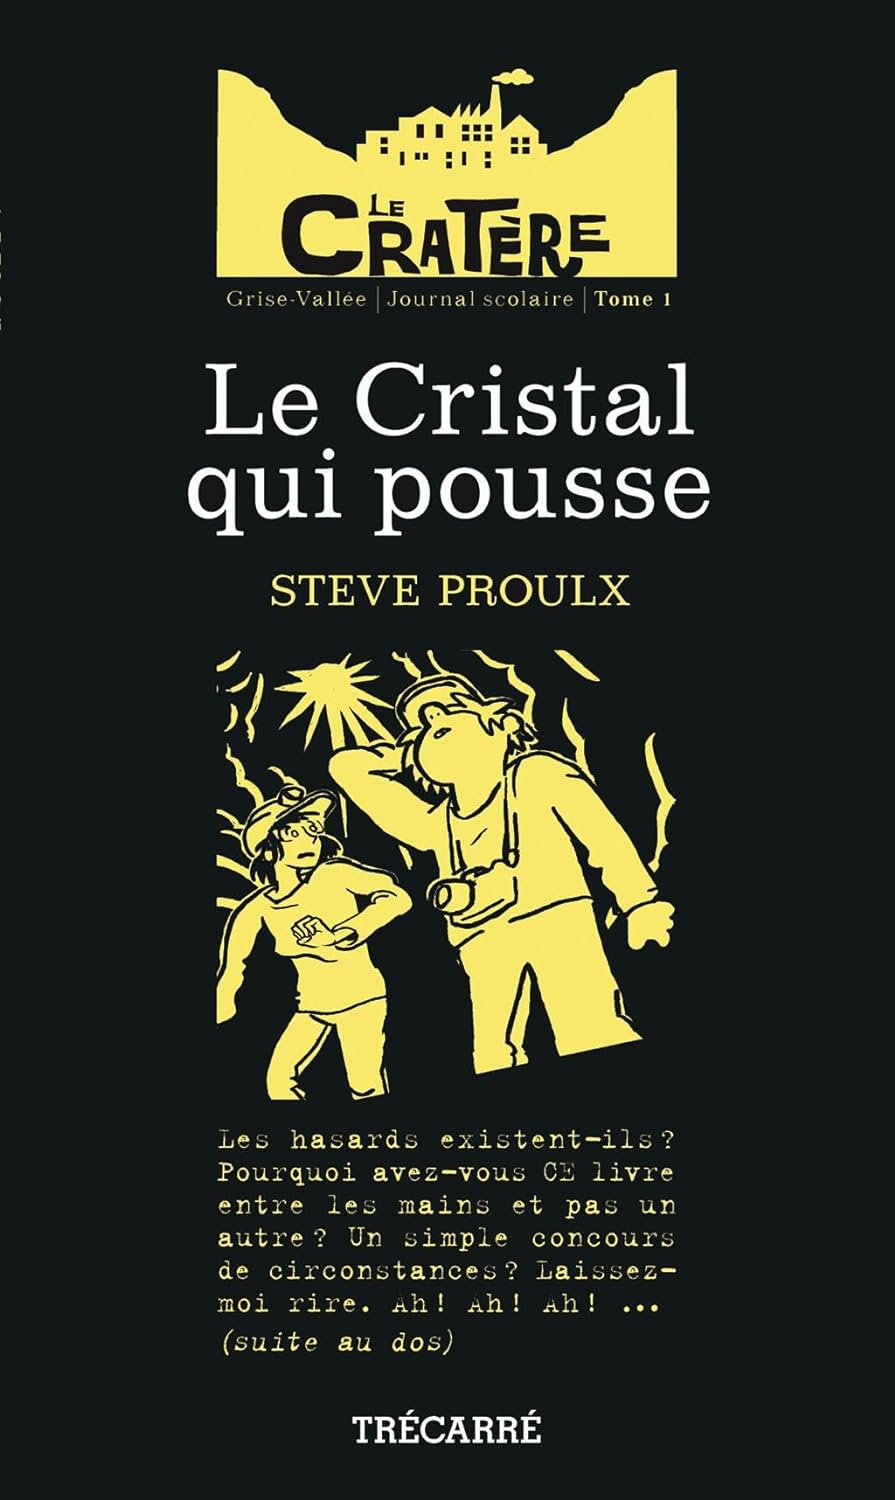 Le Cratère # 1 : Le Cristal qui pousse - Steve Proulx